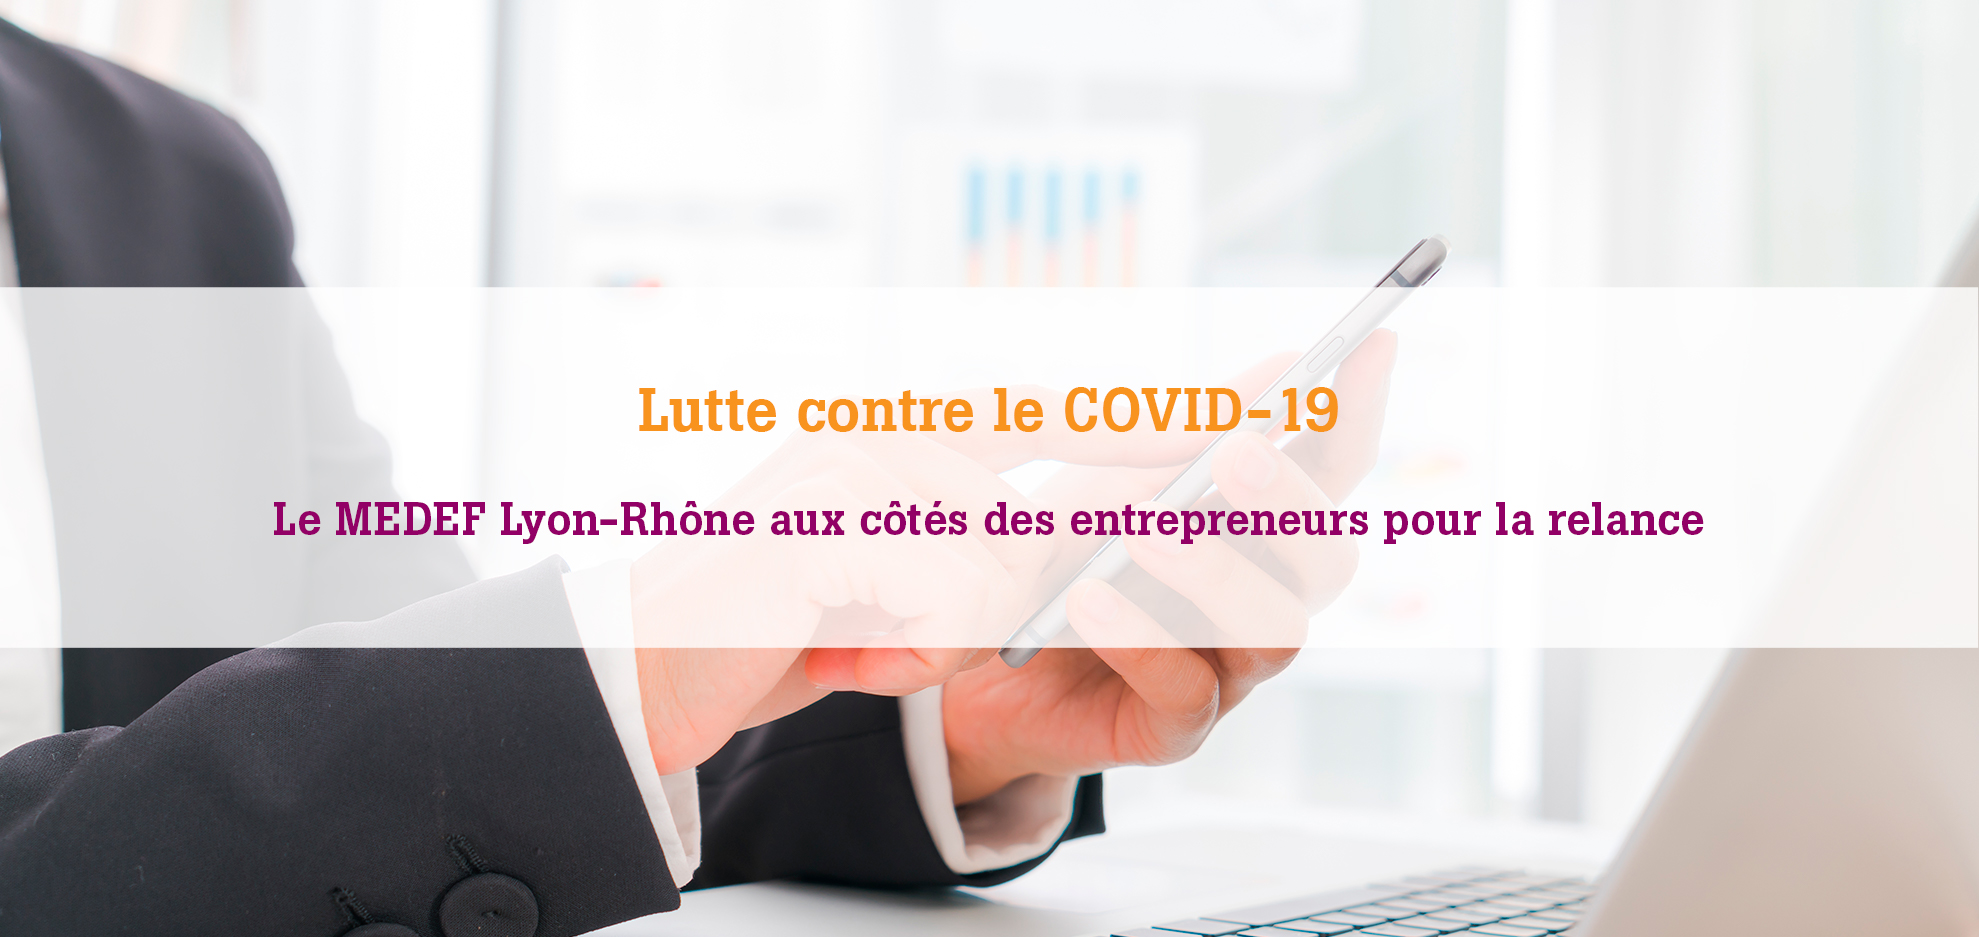 Le MEDEF Lyon-Rhône se mobilise pour vous apporter l'informations dont vous avez besoin pour faire face et lutter contre le COVID-19 et la crise économique et sanitaire